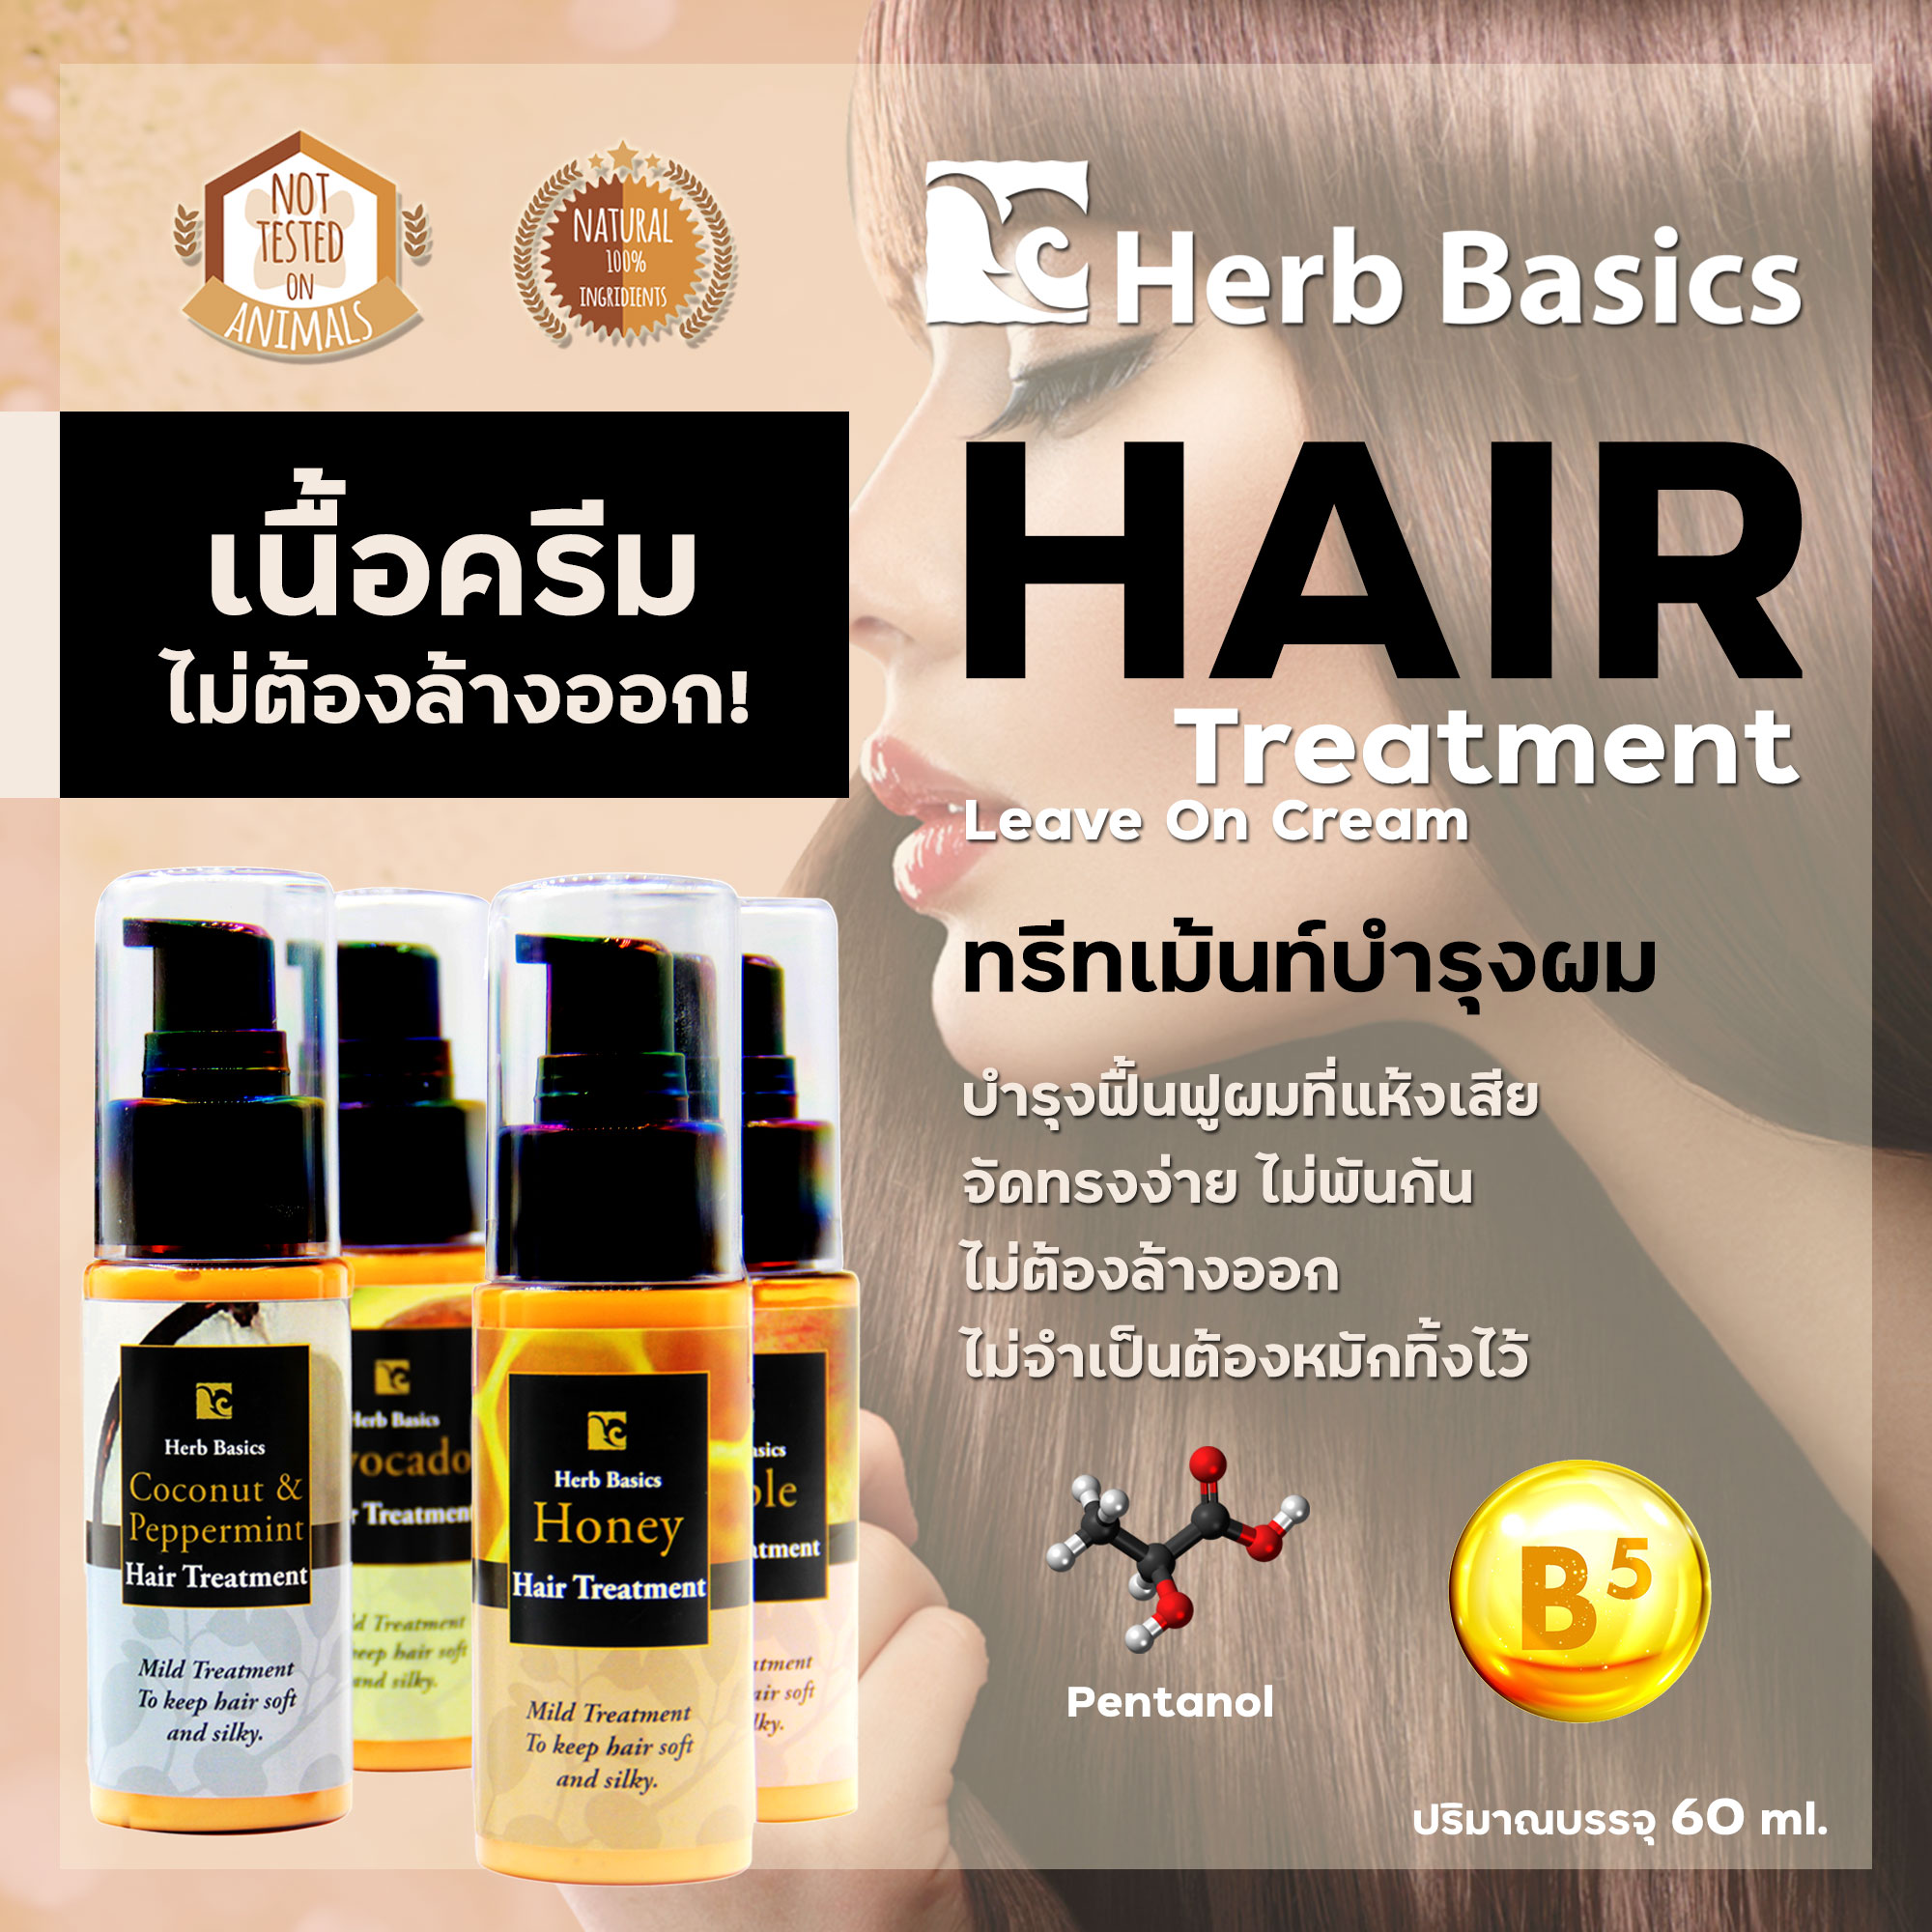 Herb Basics Hair Treatment ทรีทเม้นท์แบบครีม บำรุงเส้นผม ฟื้นฟูผมแห้งเสีย จัดทรงง่าย ไม่ต้องล้างออก  ปริมาณ (มล.) 60กลิ่น Kaffir Lime(มะกรูด)